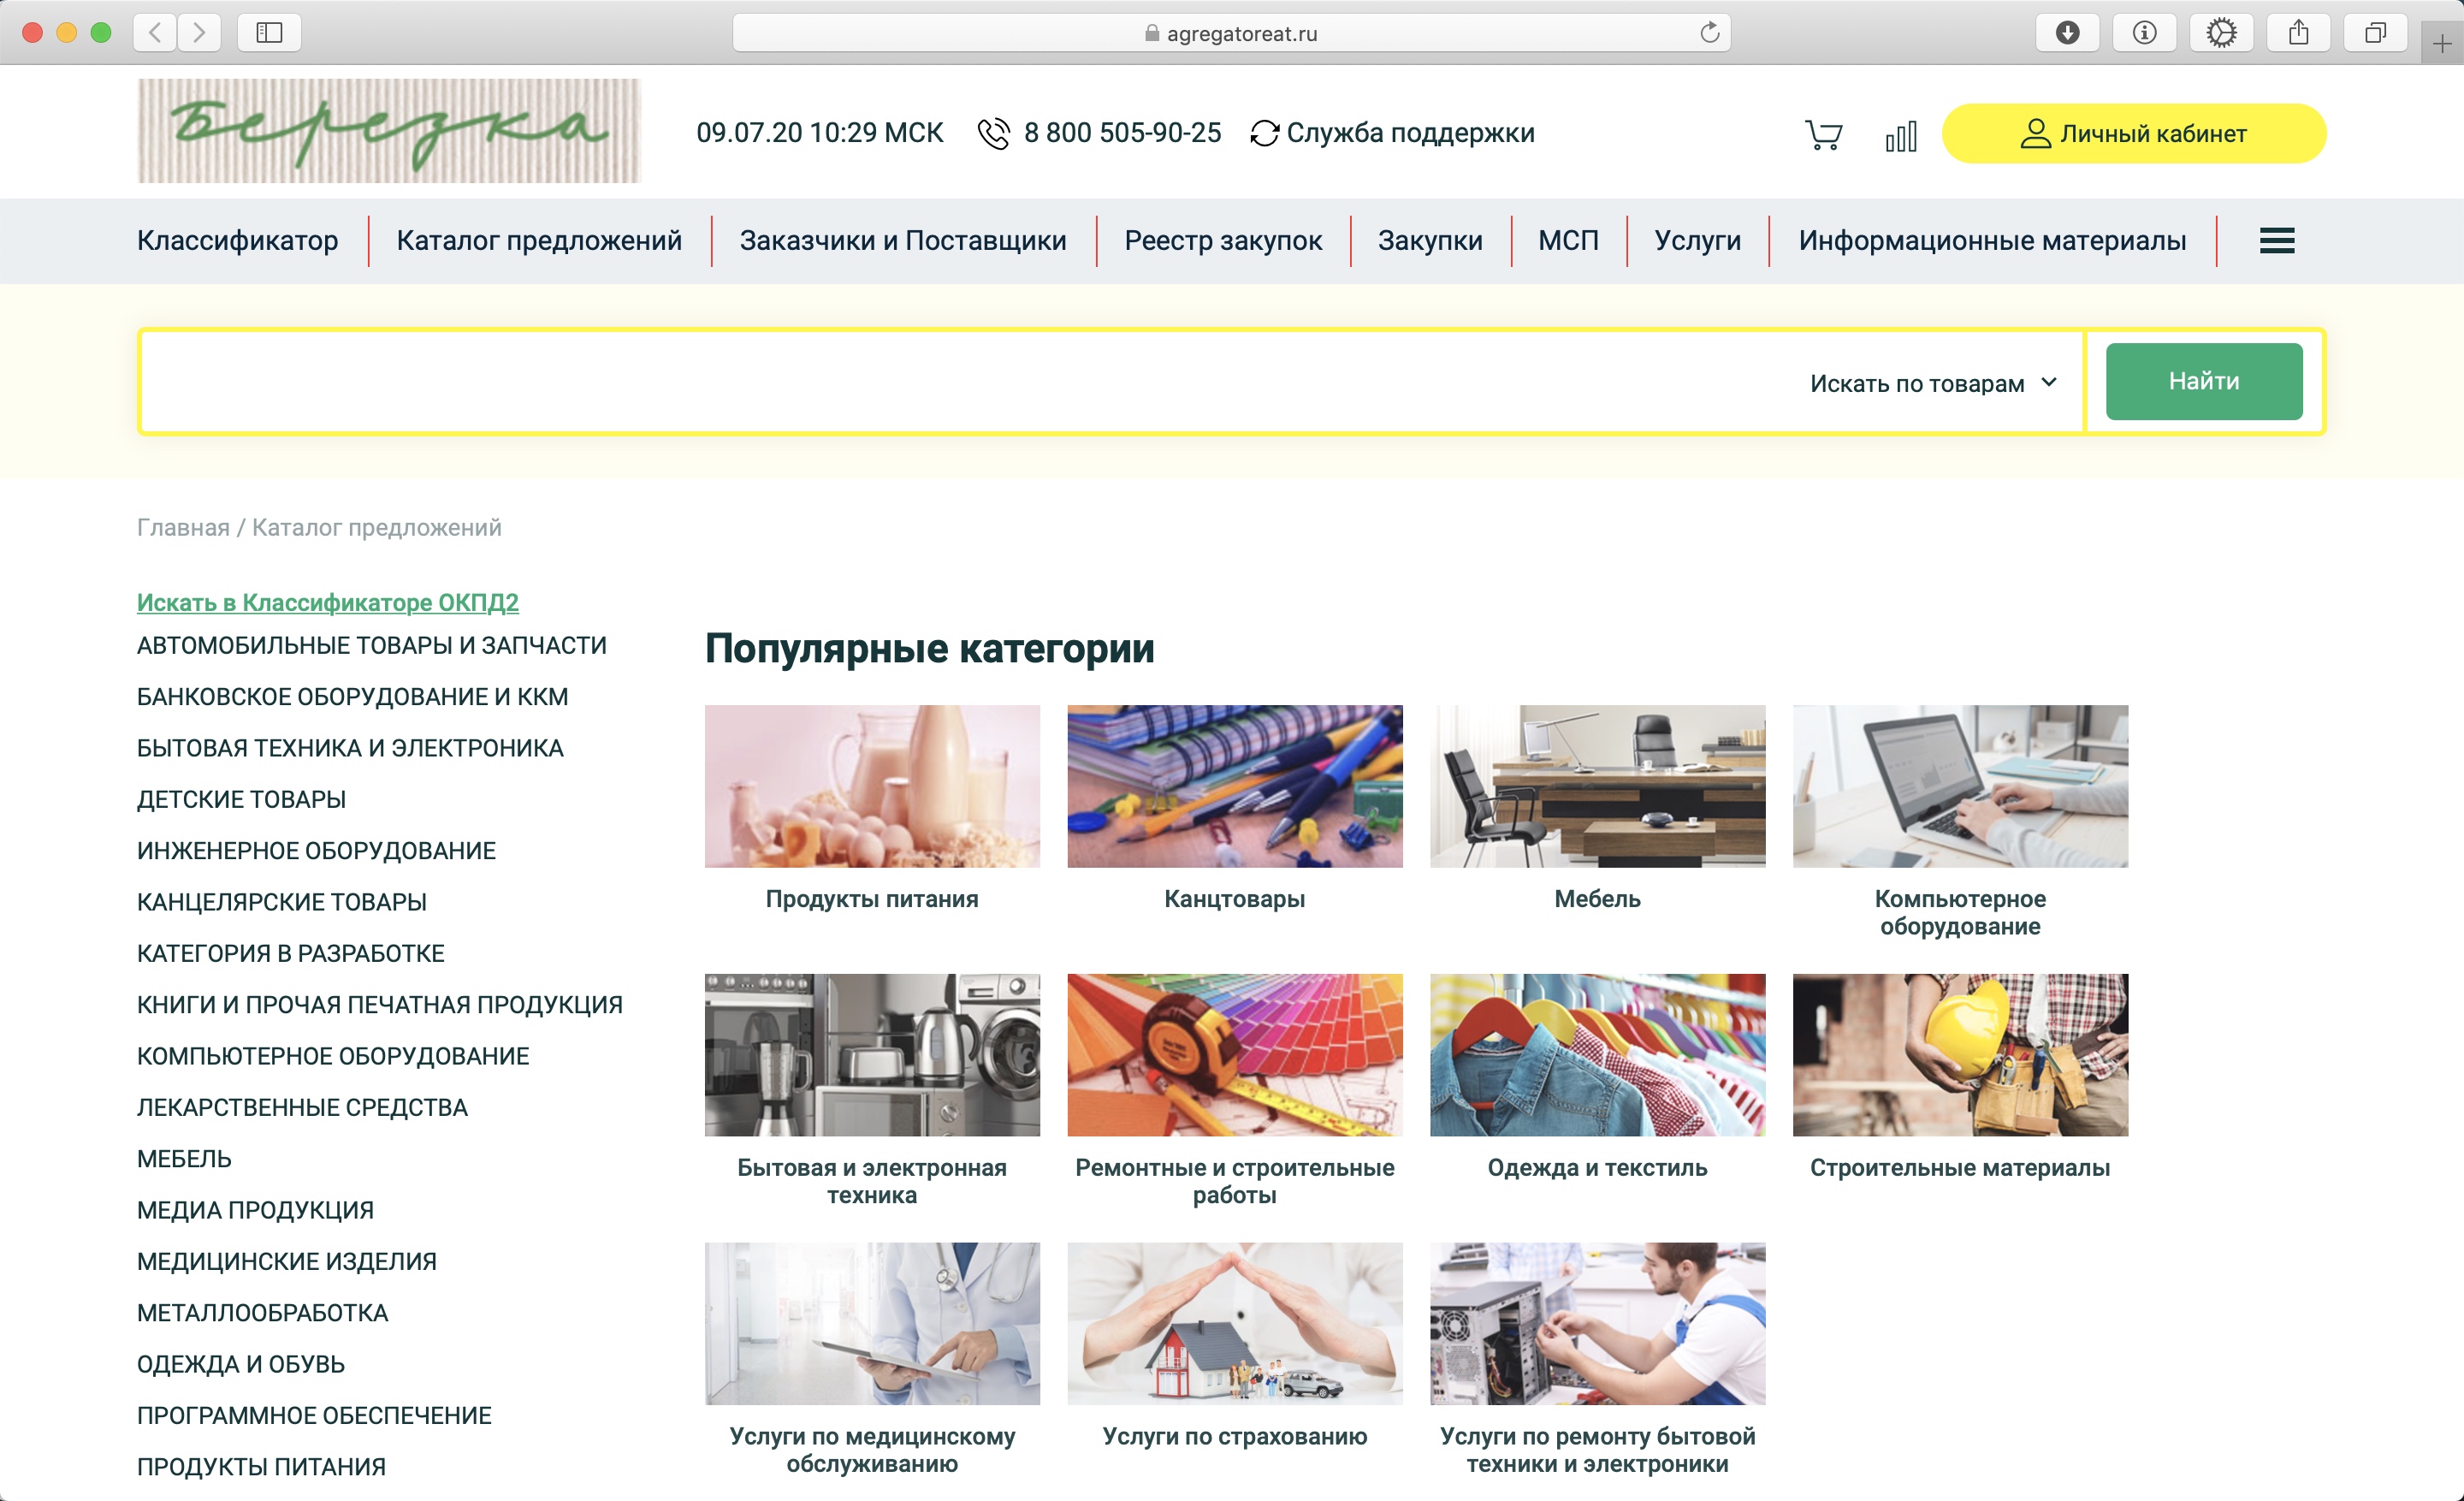 «Березка» Ростеха помогла сэкономить на закупках более 400 млн рублей